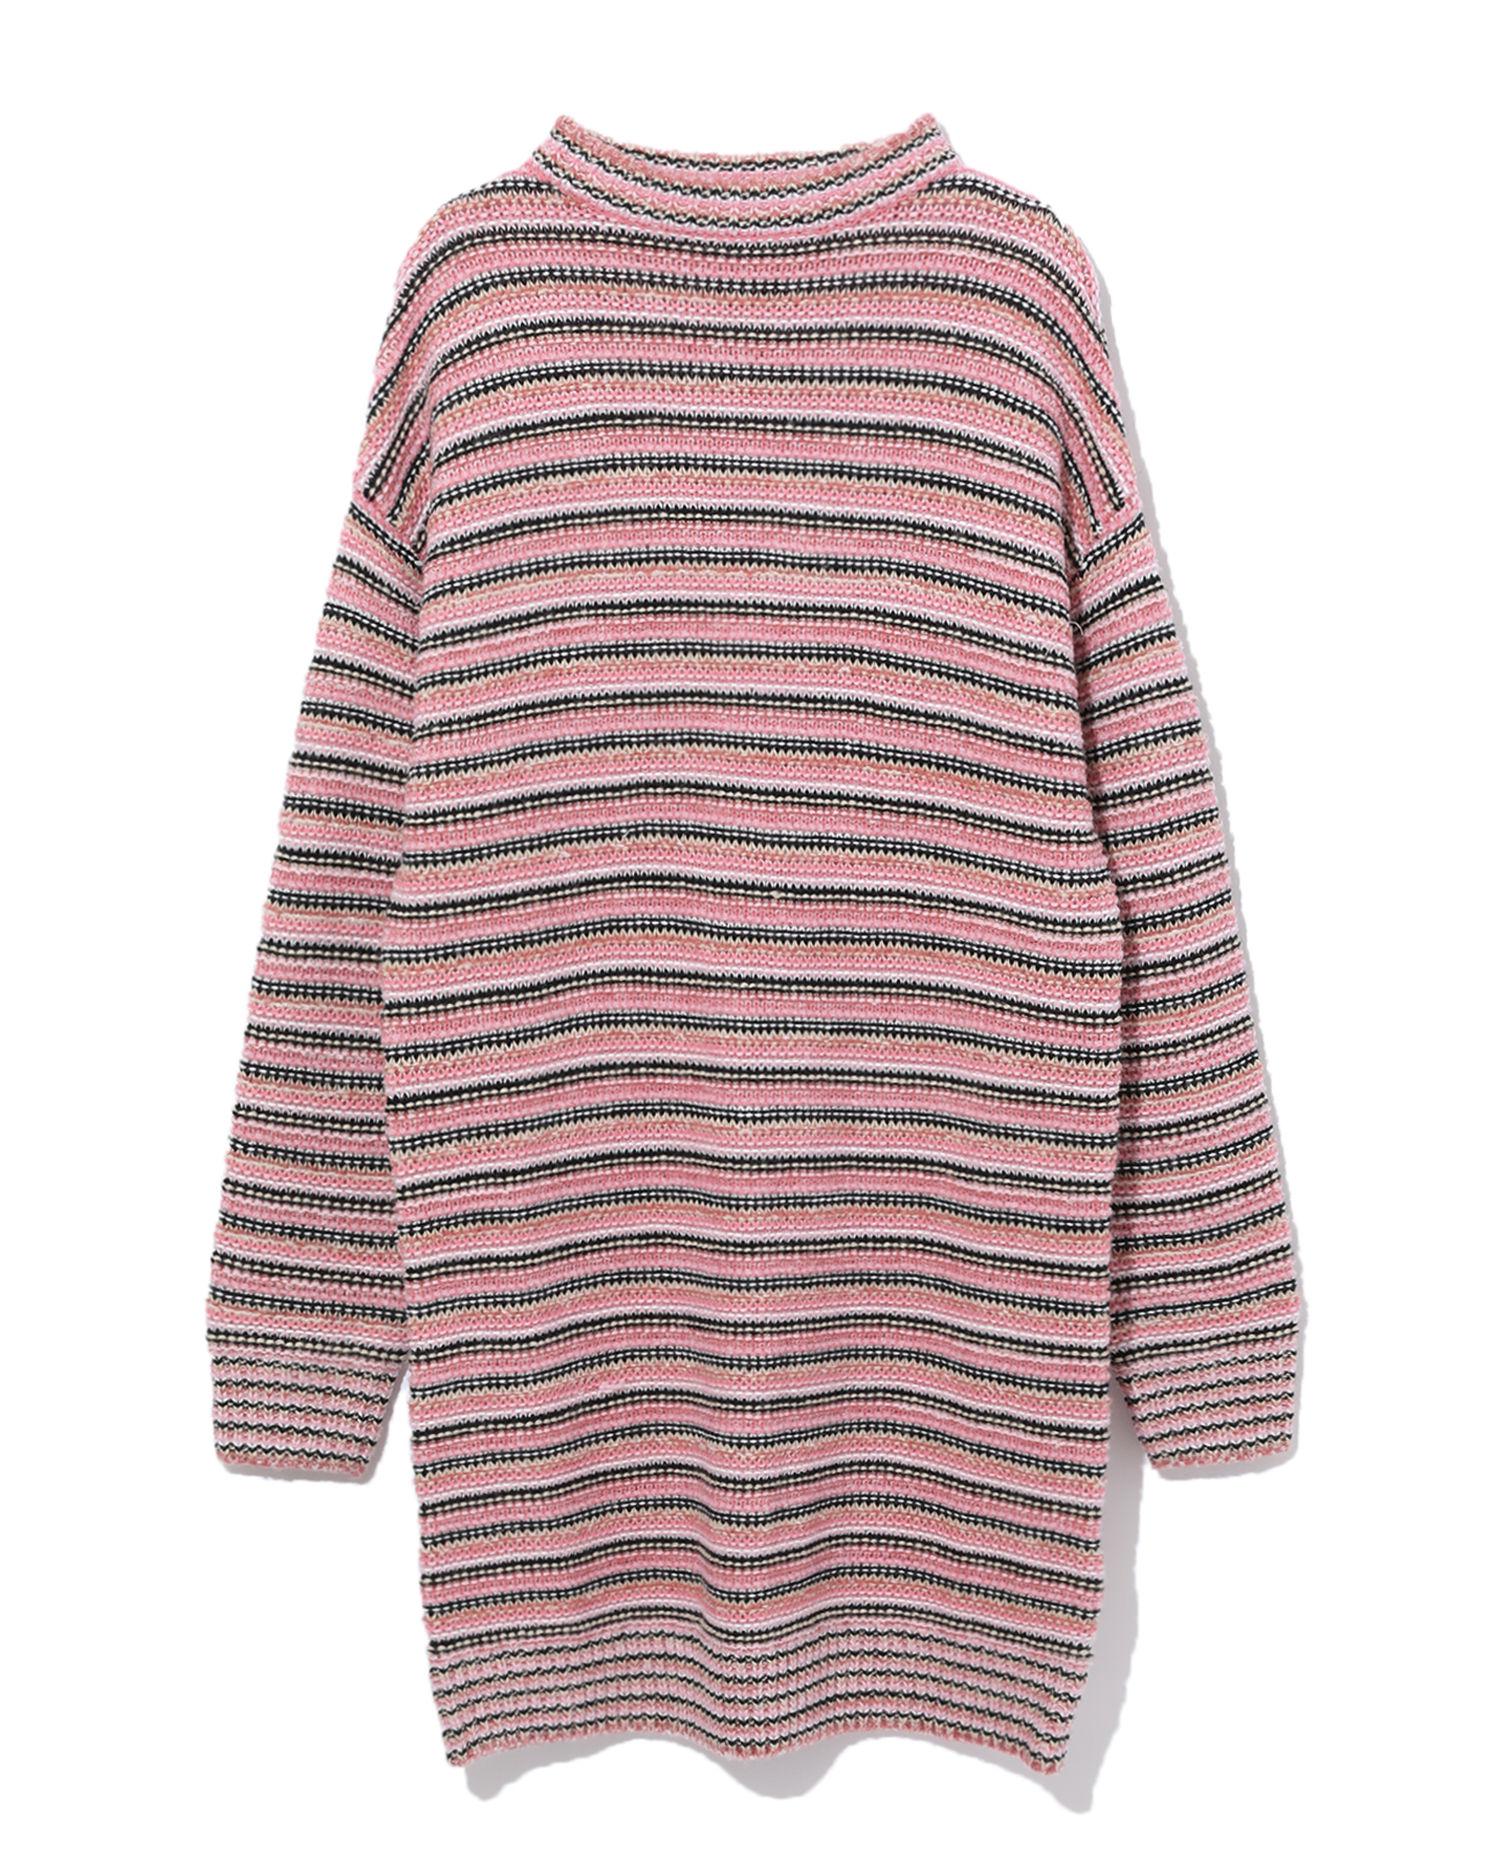 Stripe knit dress by B+AB